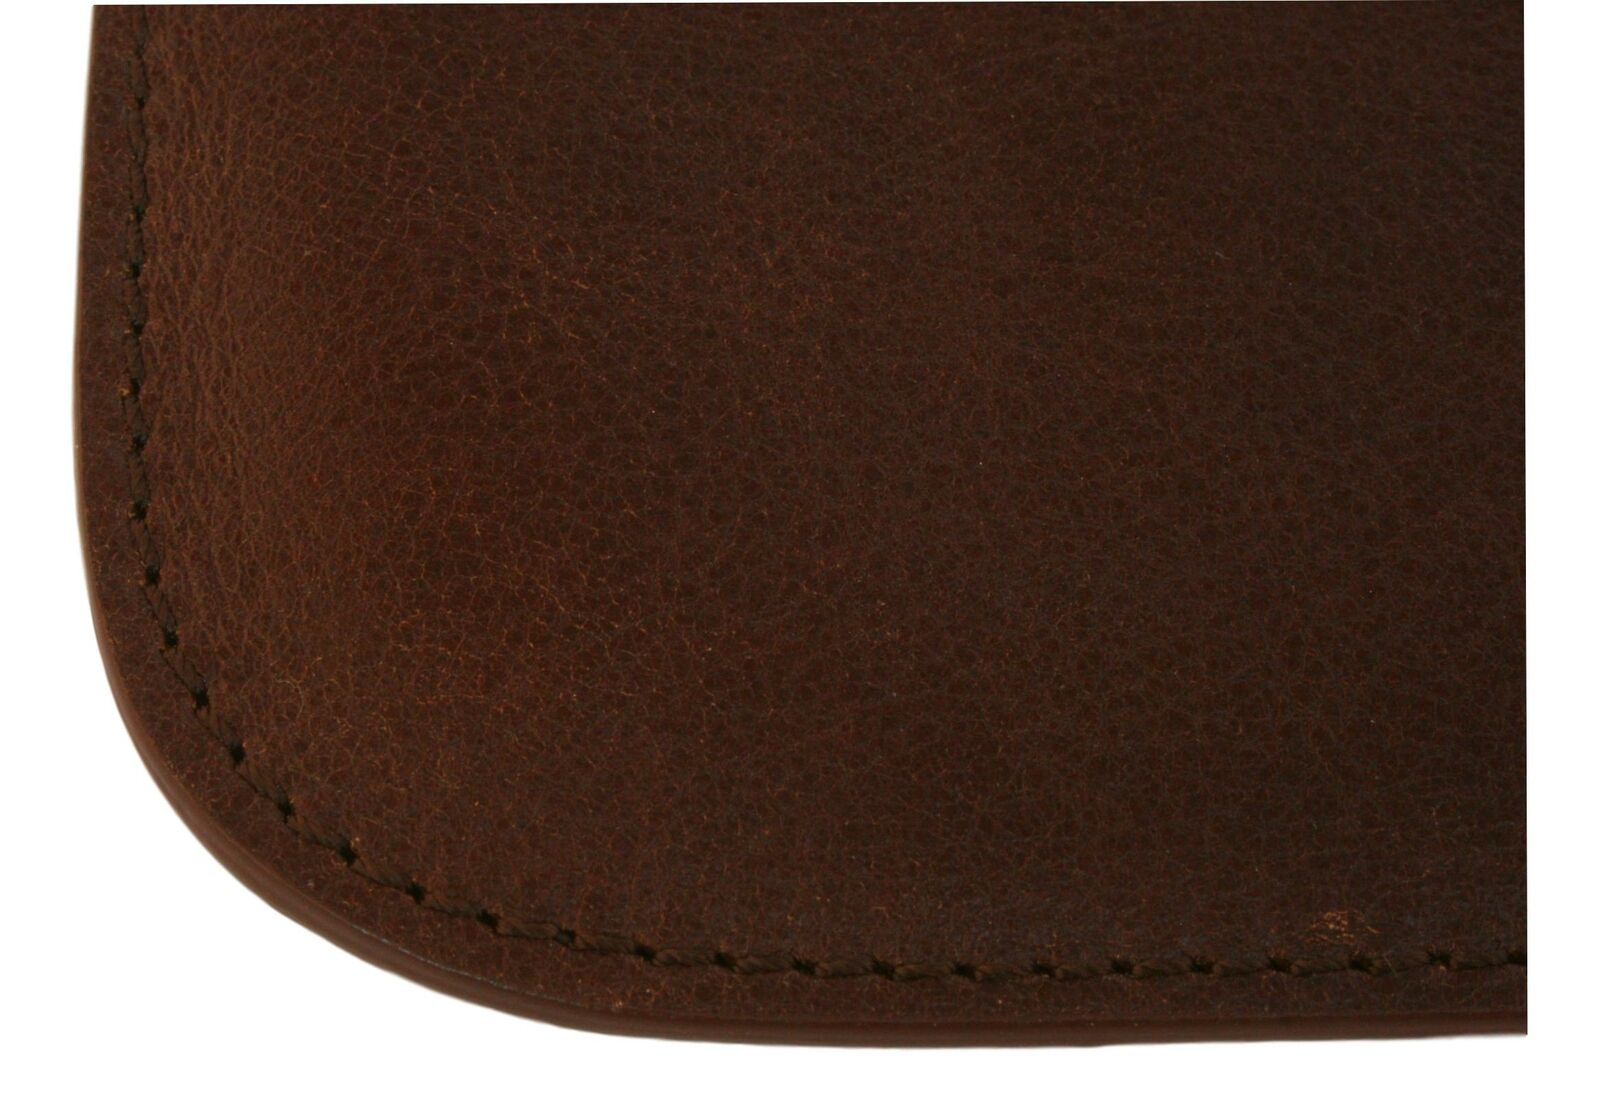 Scrambler Pewter 4 Oz Hip Flask Brown Leather Pouch Personalised 545 Najniższa cena wyzwanie